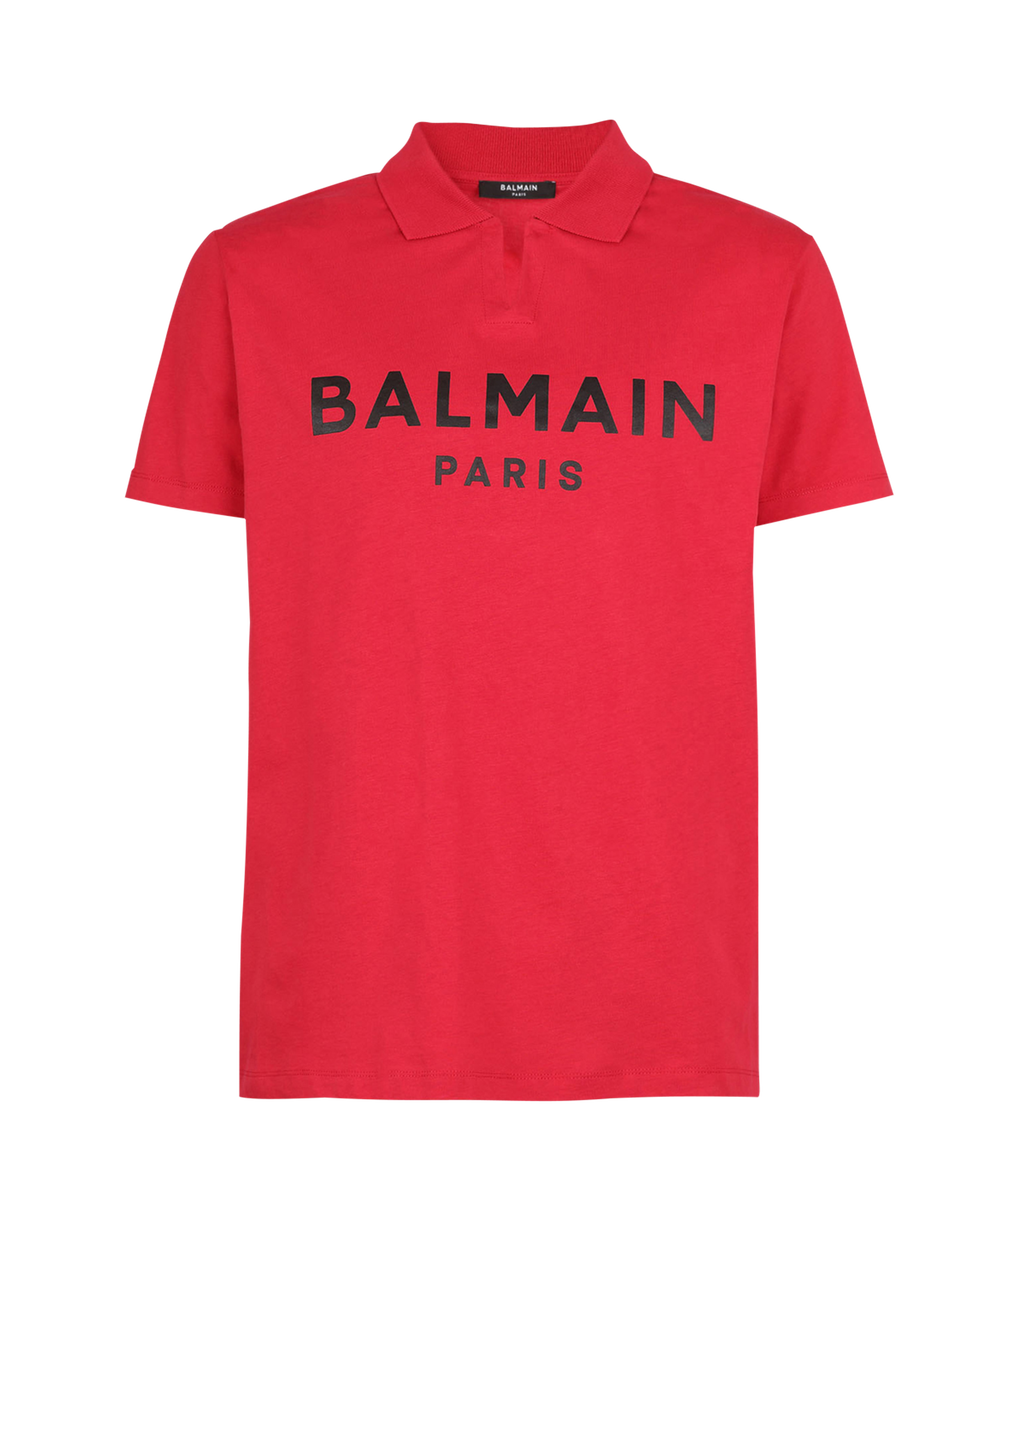 Polo en coton éco-design imprimé logo Balmain, rouge, hi-res